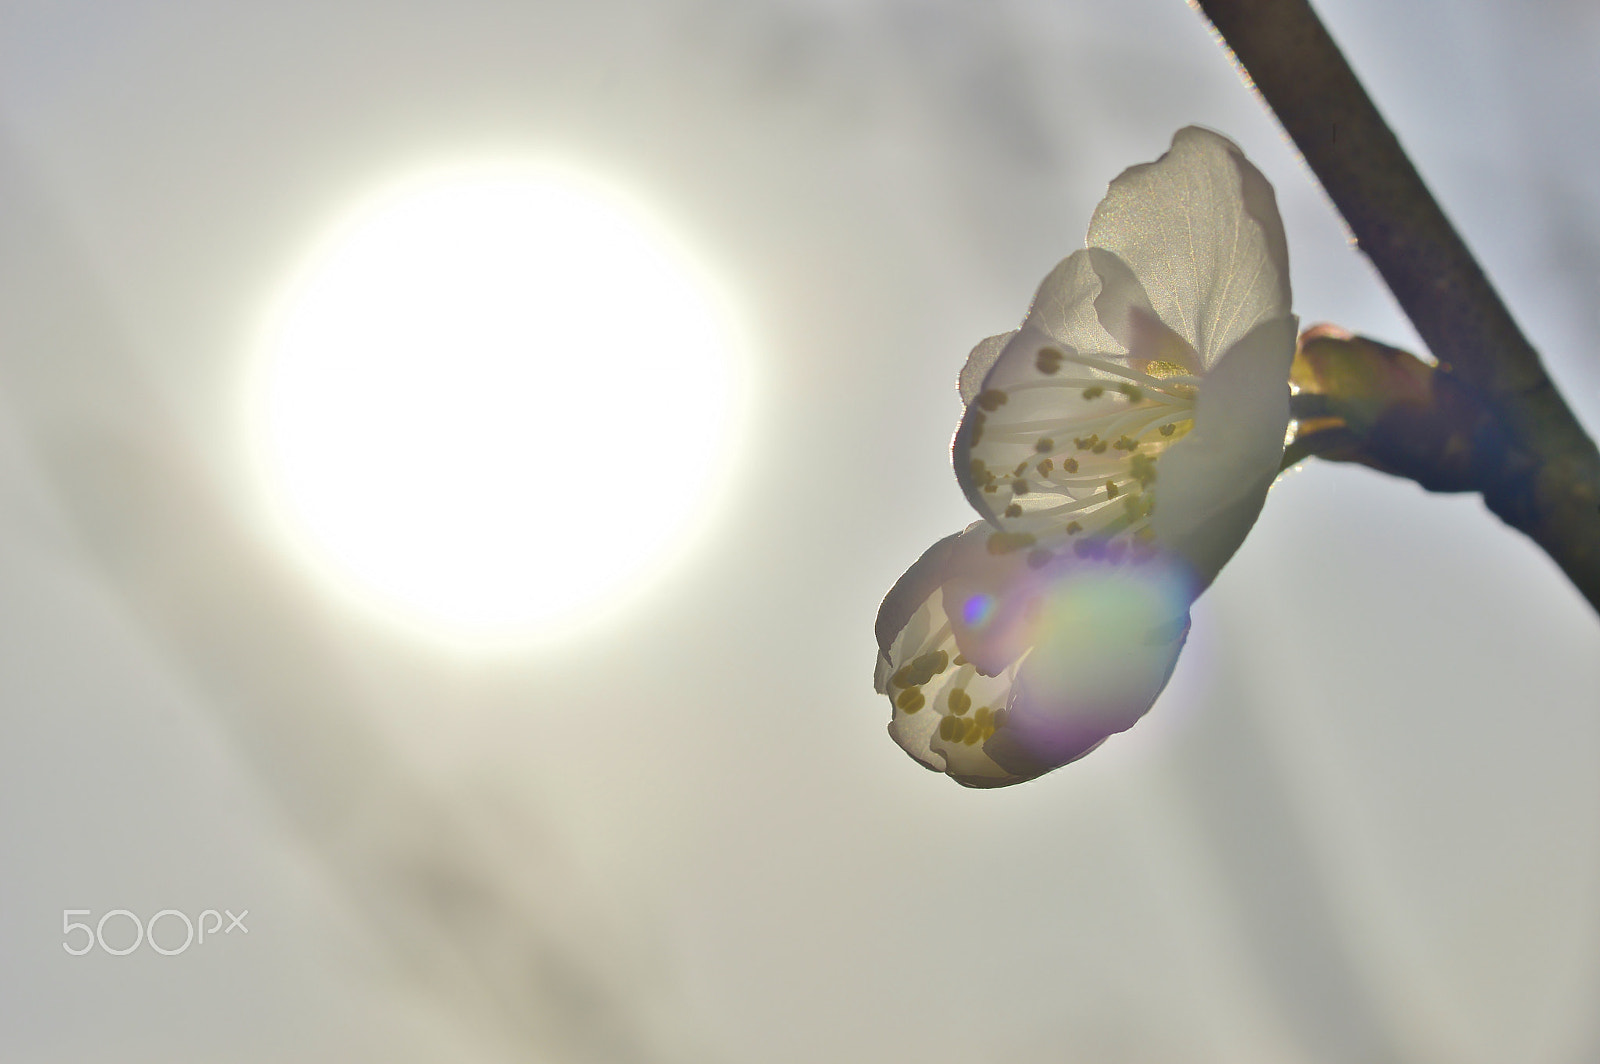 Nikon D3200 + AF Micro-Nikkor 55mm f/2.8 sample photo. Flower......spring nature photography